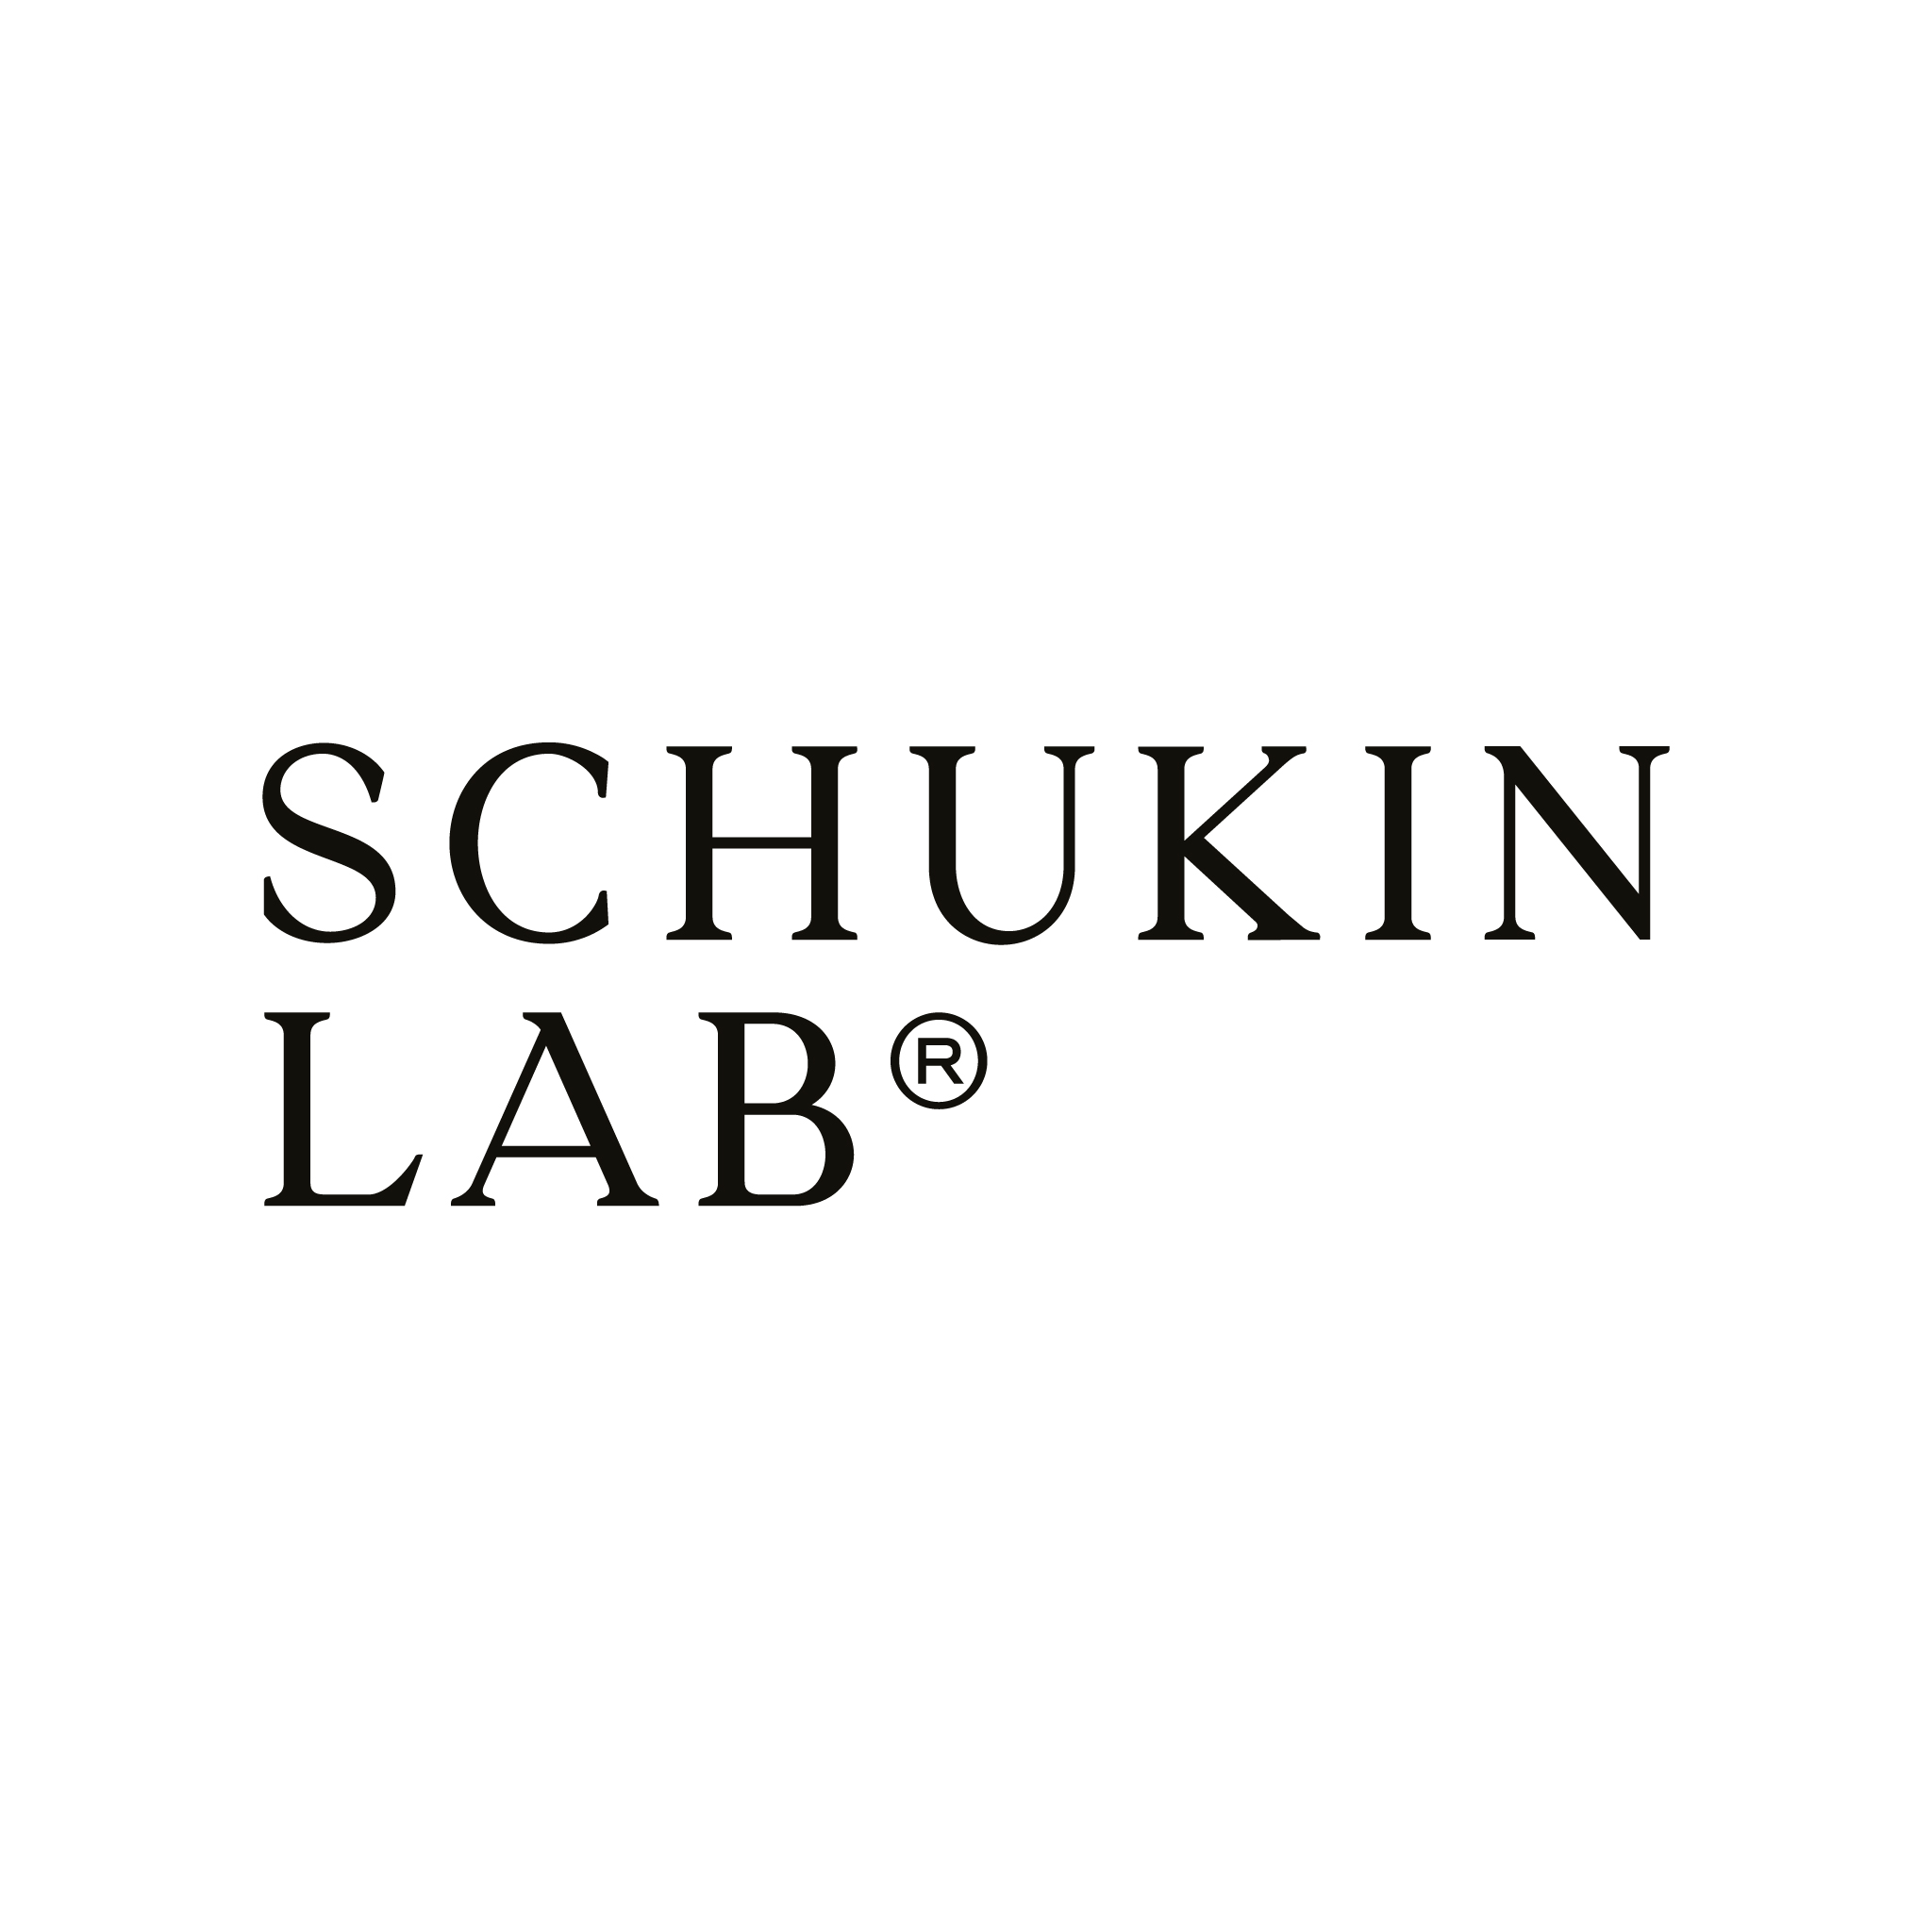 schukin lab